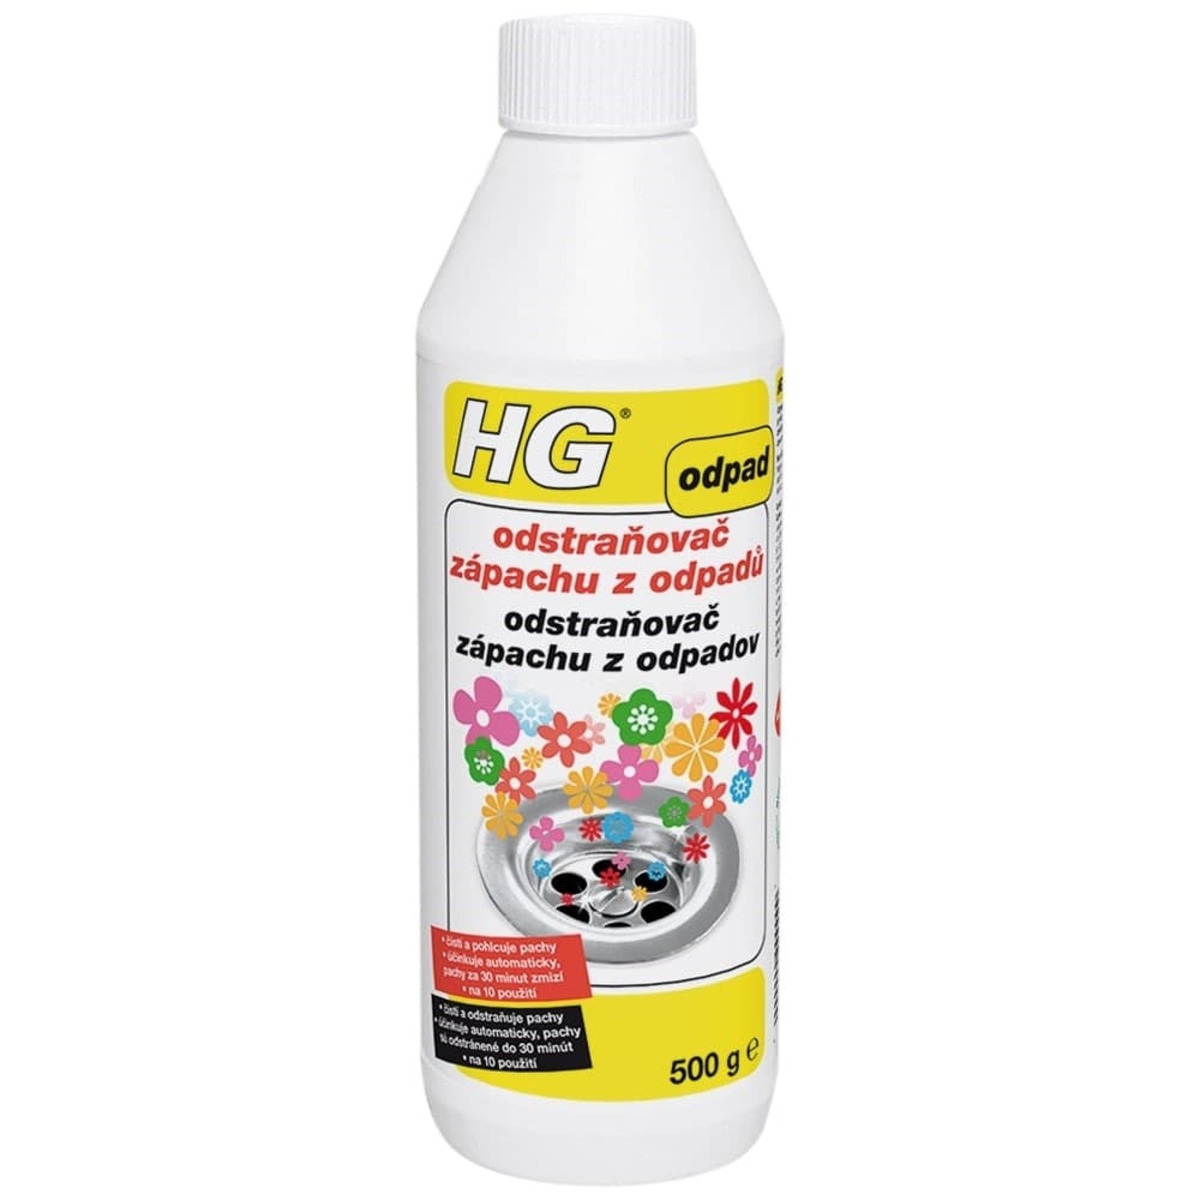 HG odstraňovač zápachu z odpadů HGOZO HG